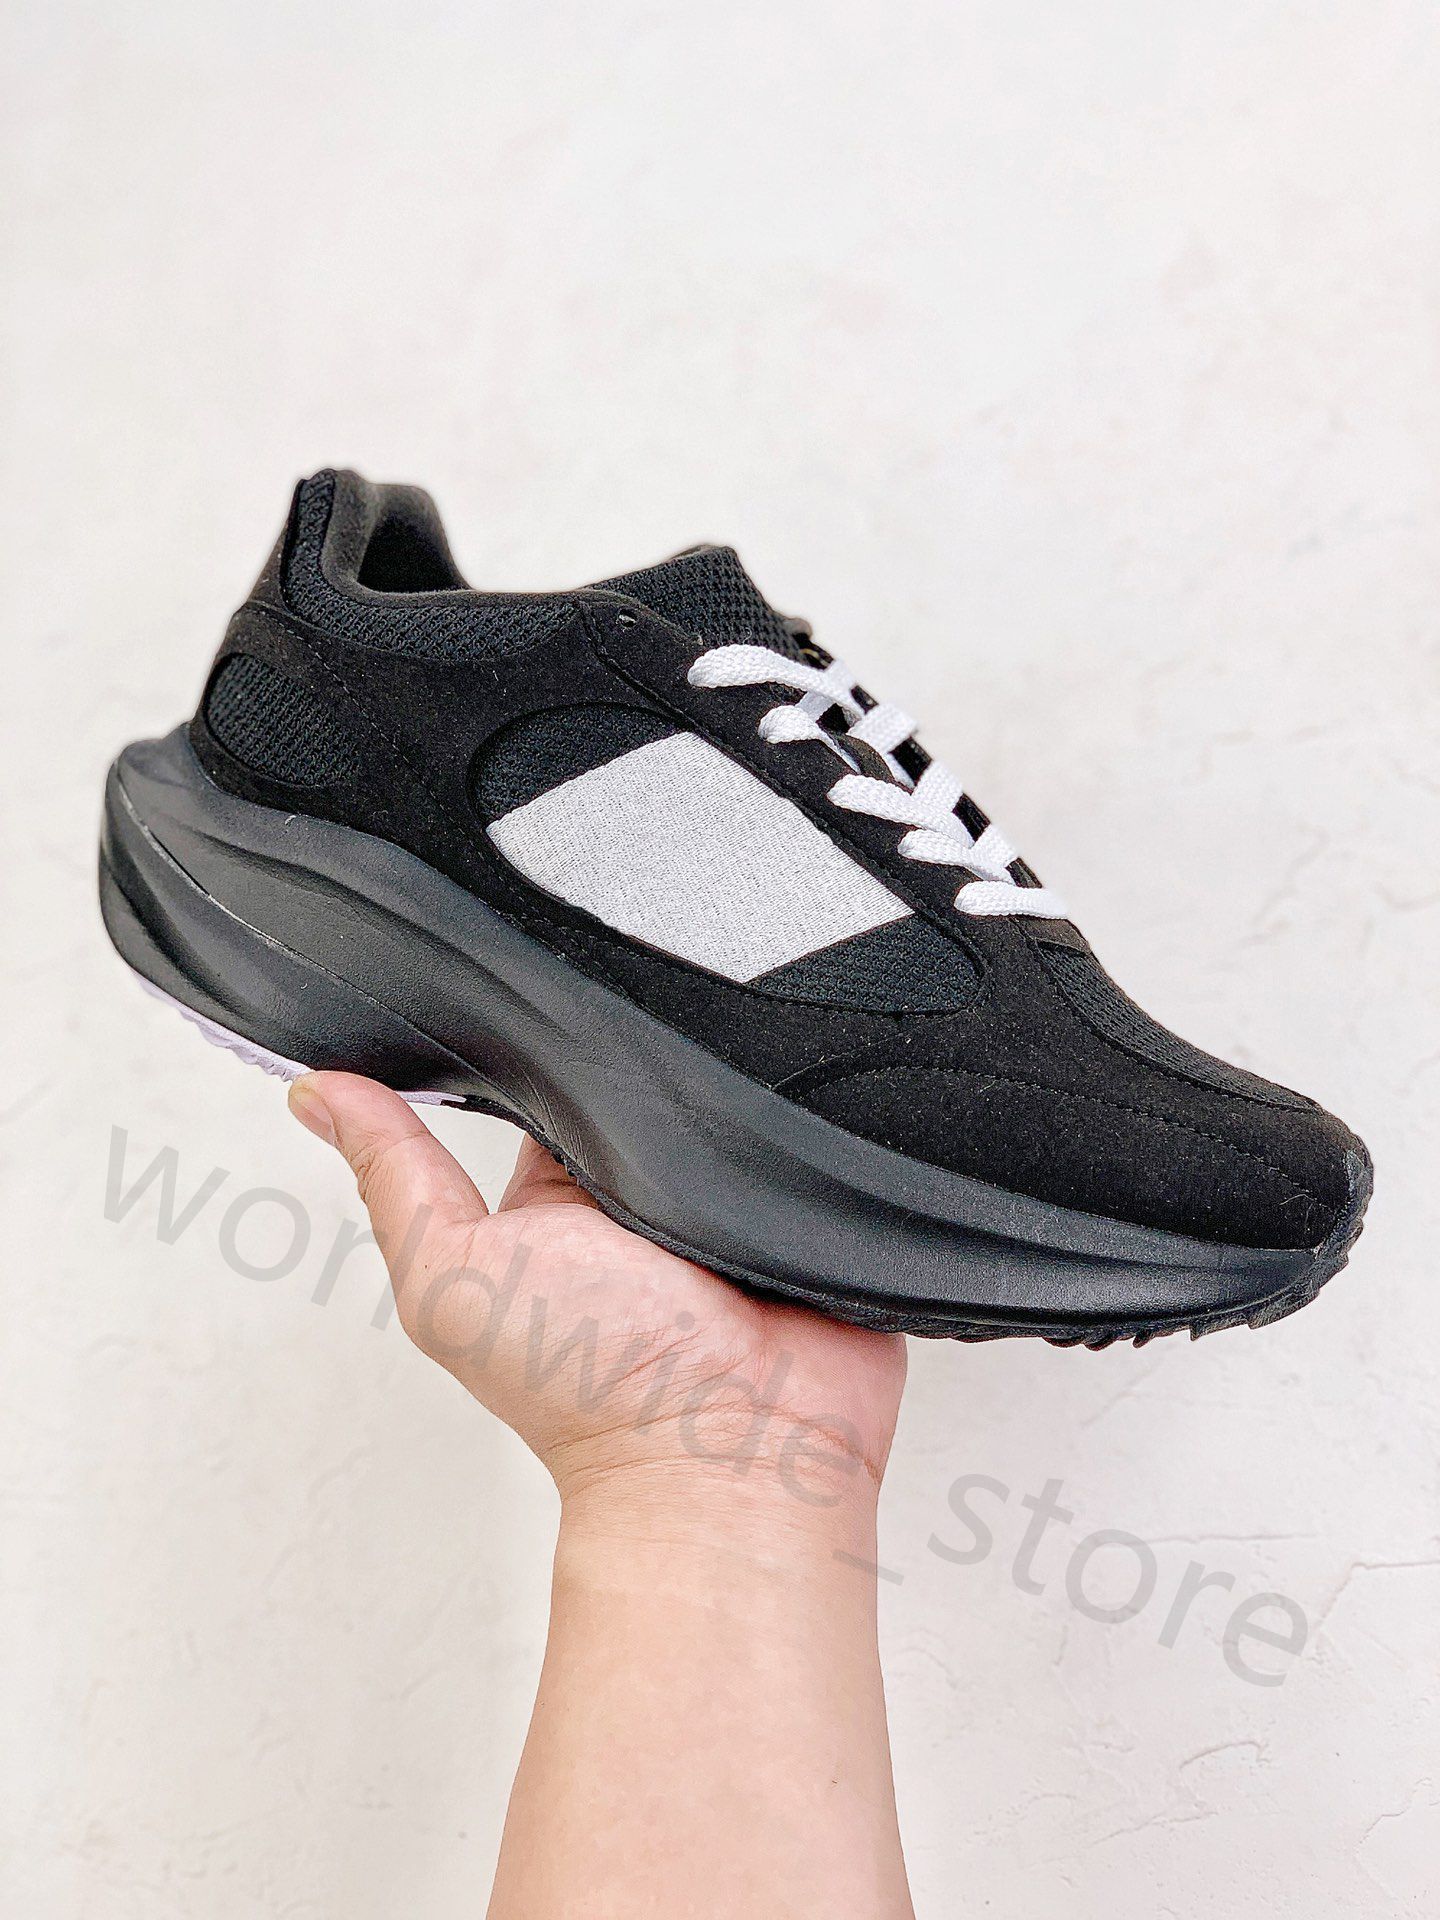 Tasarımcı Spor Ayakkabıları WRPD Koşucu Koşu Ayakkabı Yolu Yol Yaşam Tarzı Yürüyüş Ayakkabıları King Hat Popüler Spor Ayakkabıları Sporları Sporlar 36-46